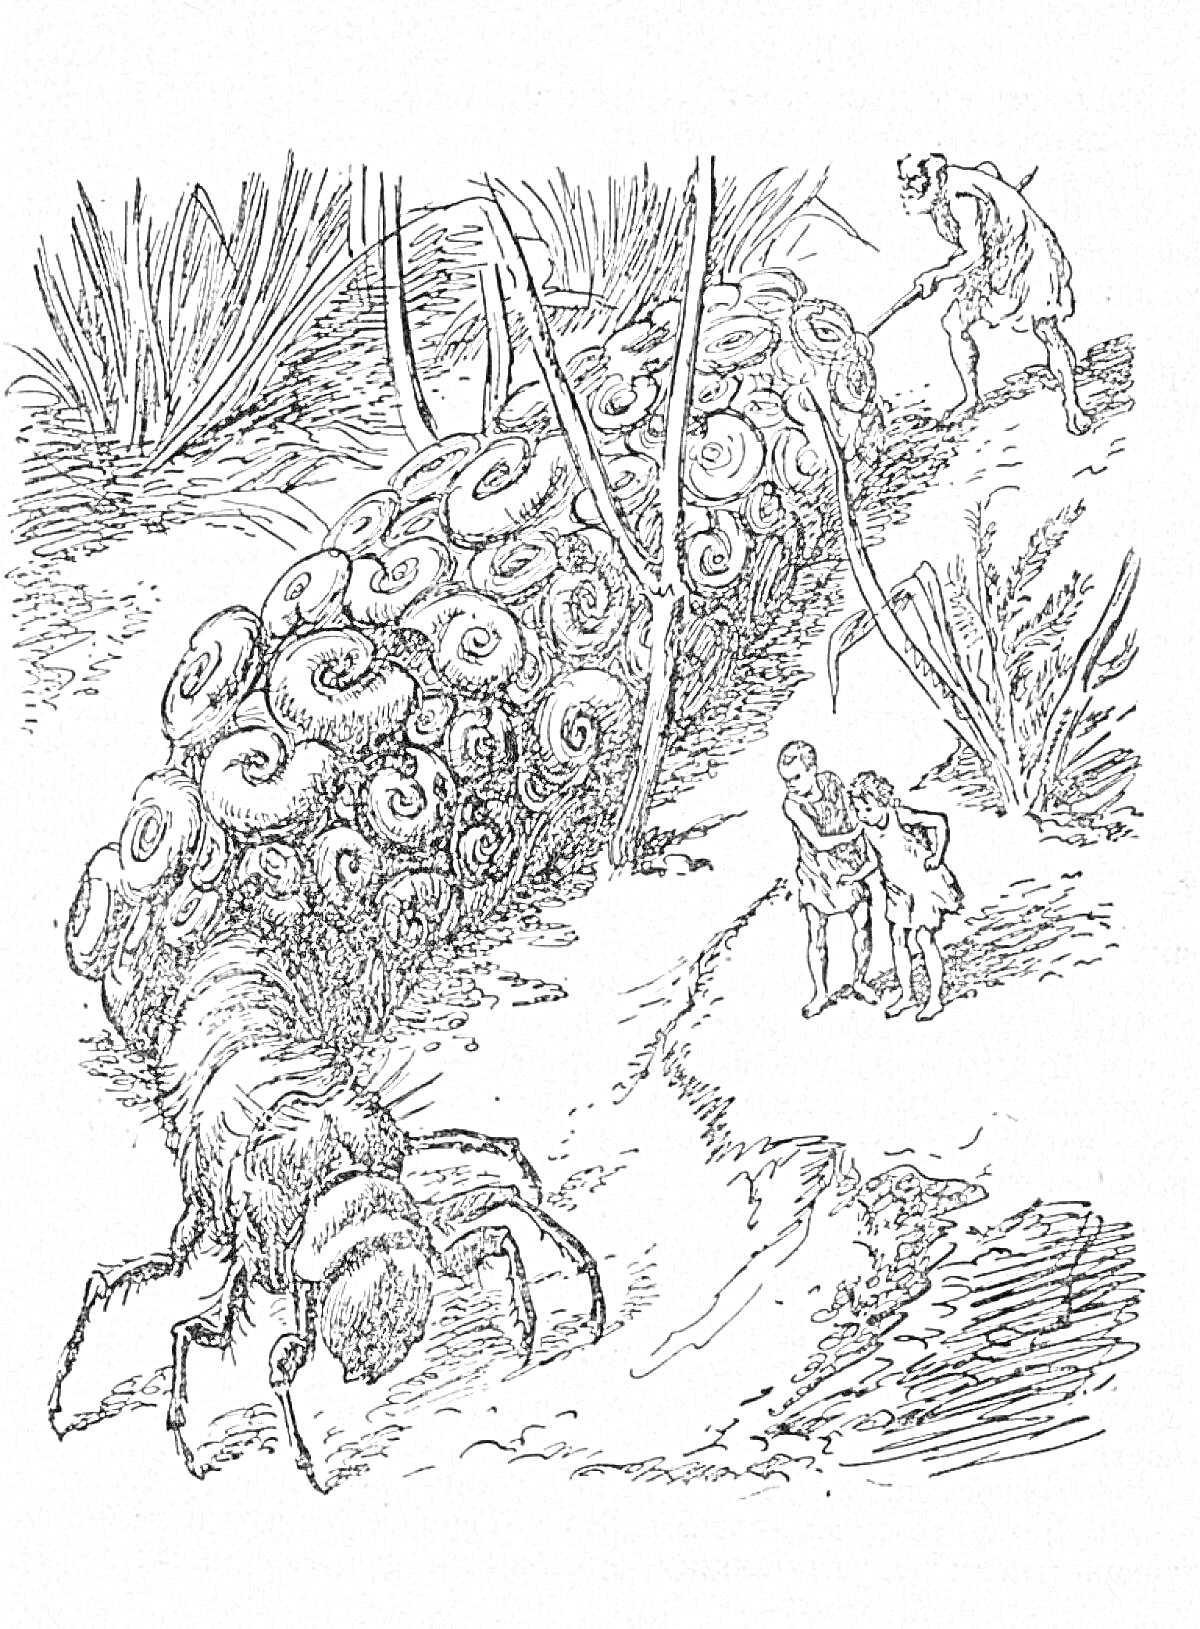 Раскраска Приключения Карика и Вали - Дети и профессор побегают гигантскую многоножку на фоне растений